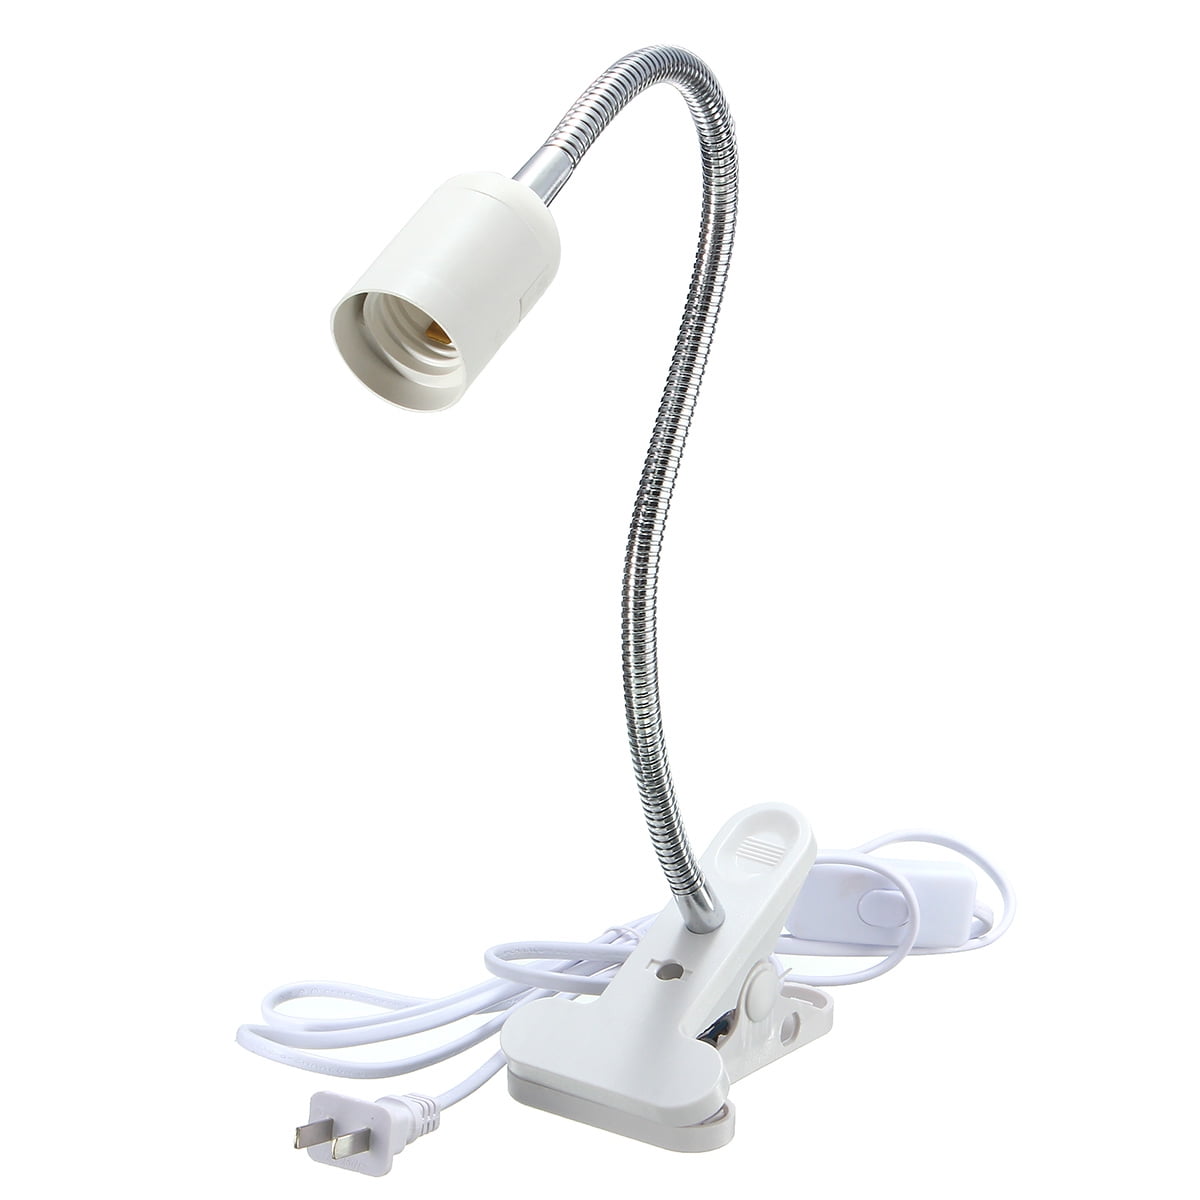 E27 Led Clamp Light Lamp Bulb Holder, Table Lamp Holder Clamp